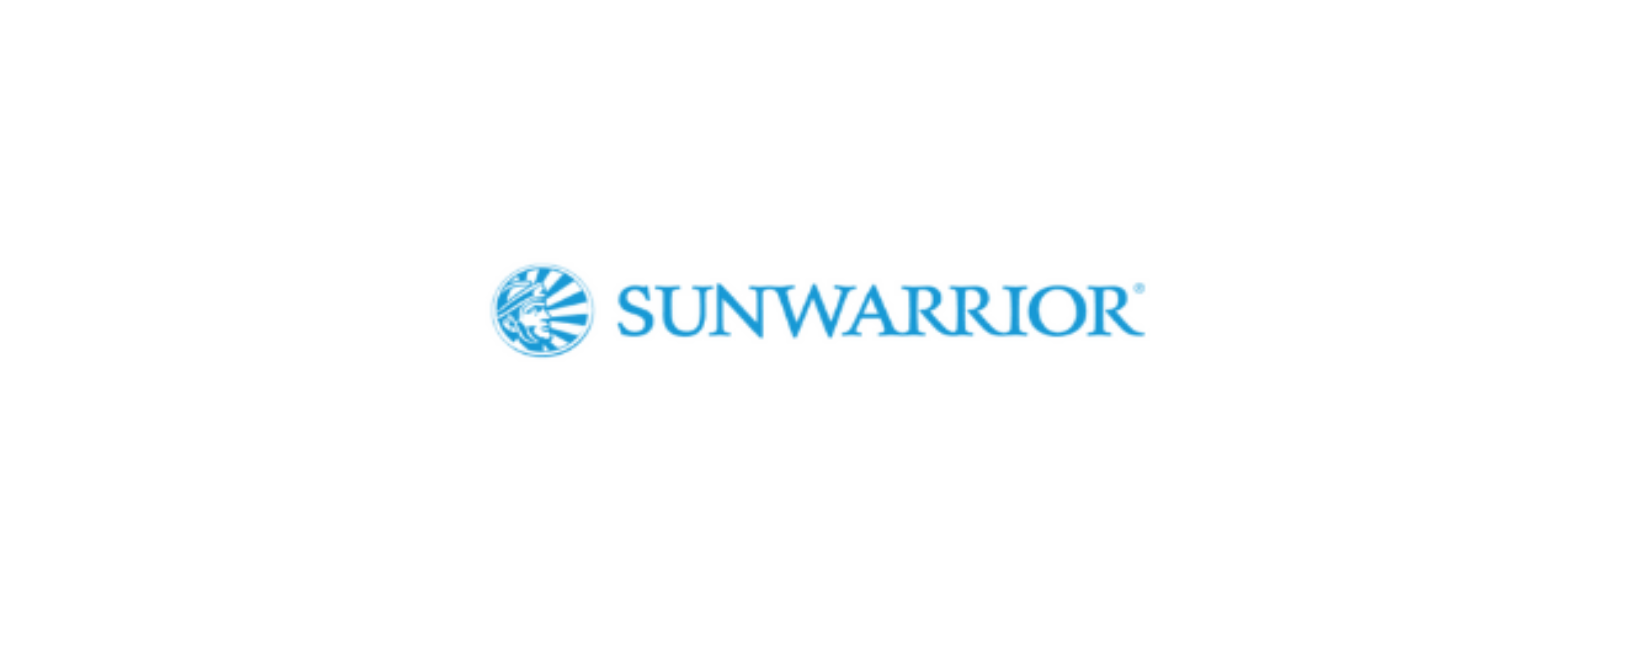 Sunwarrior Discount Code 2022